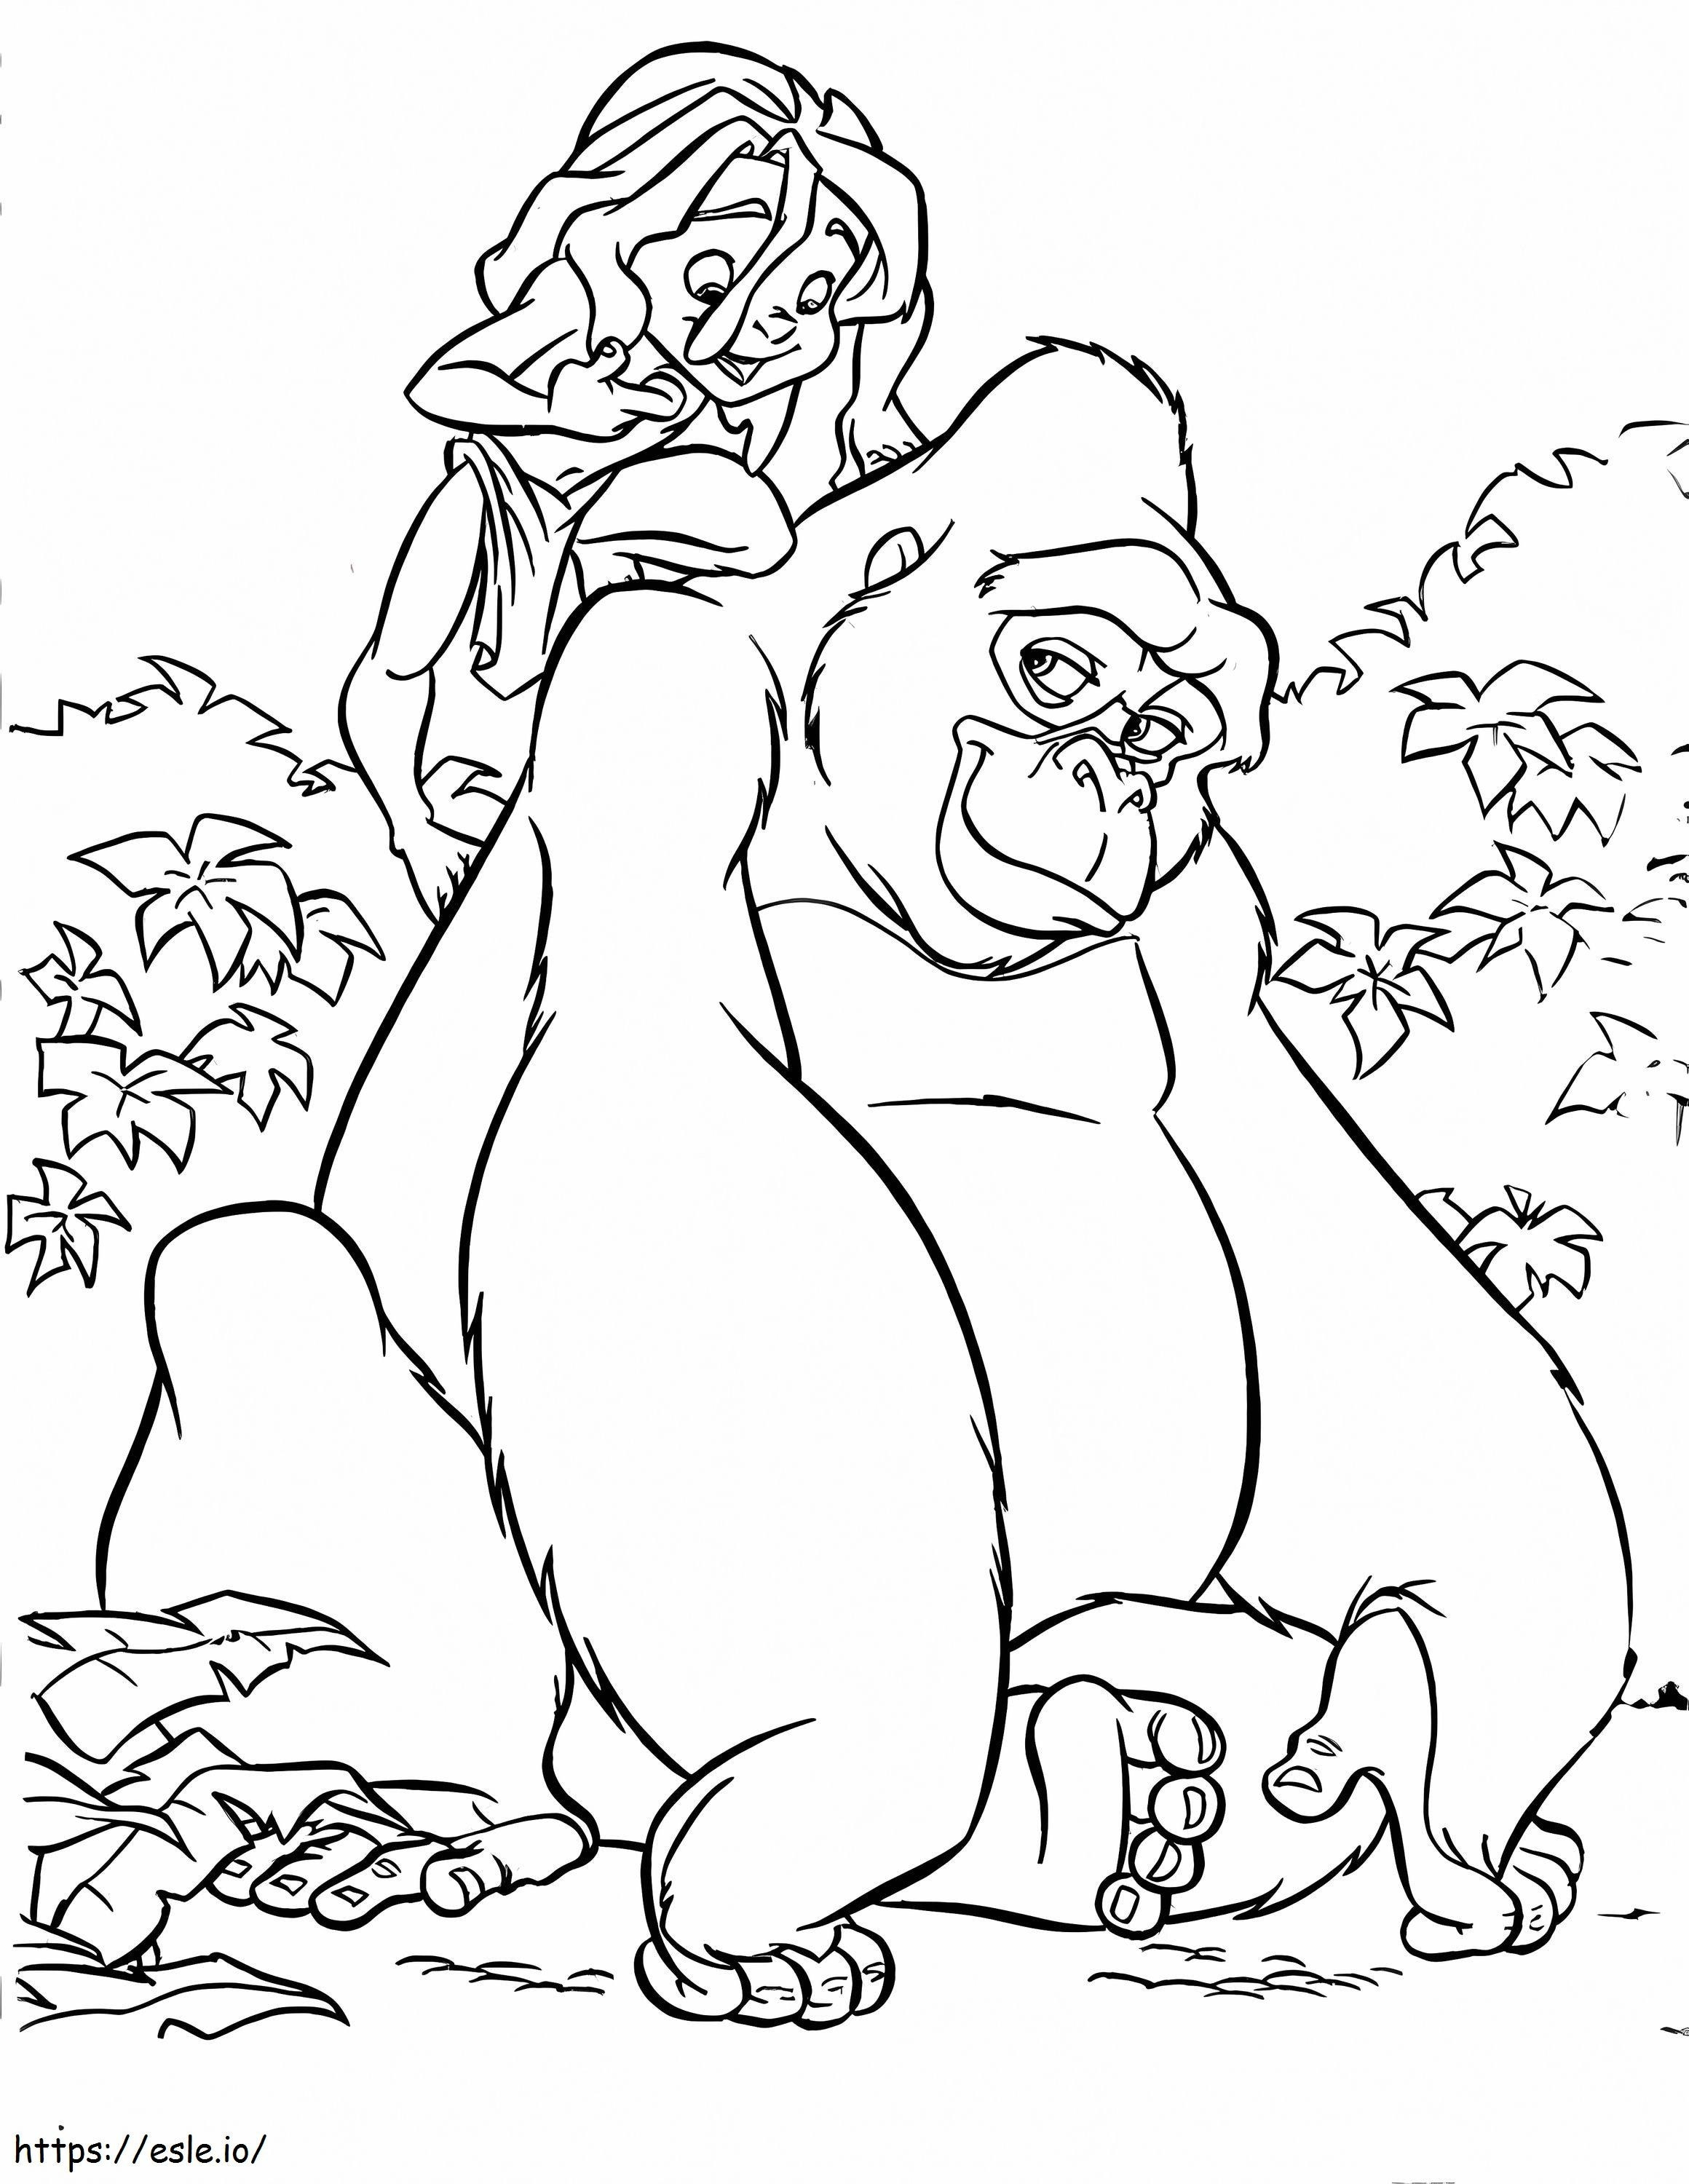 Tarzan Con King Kong coloring page